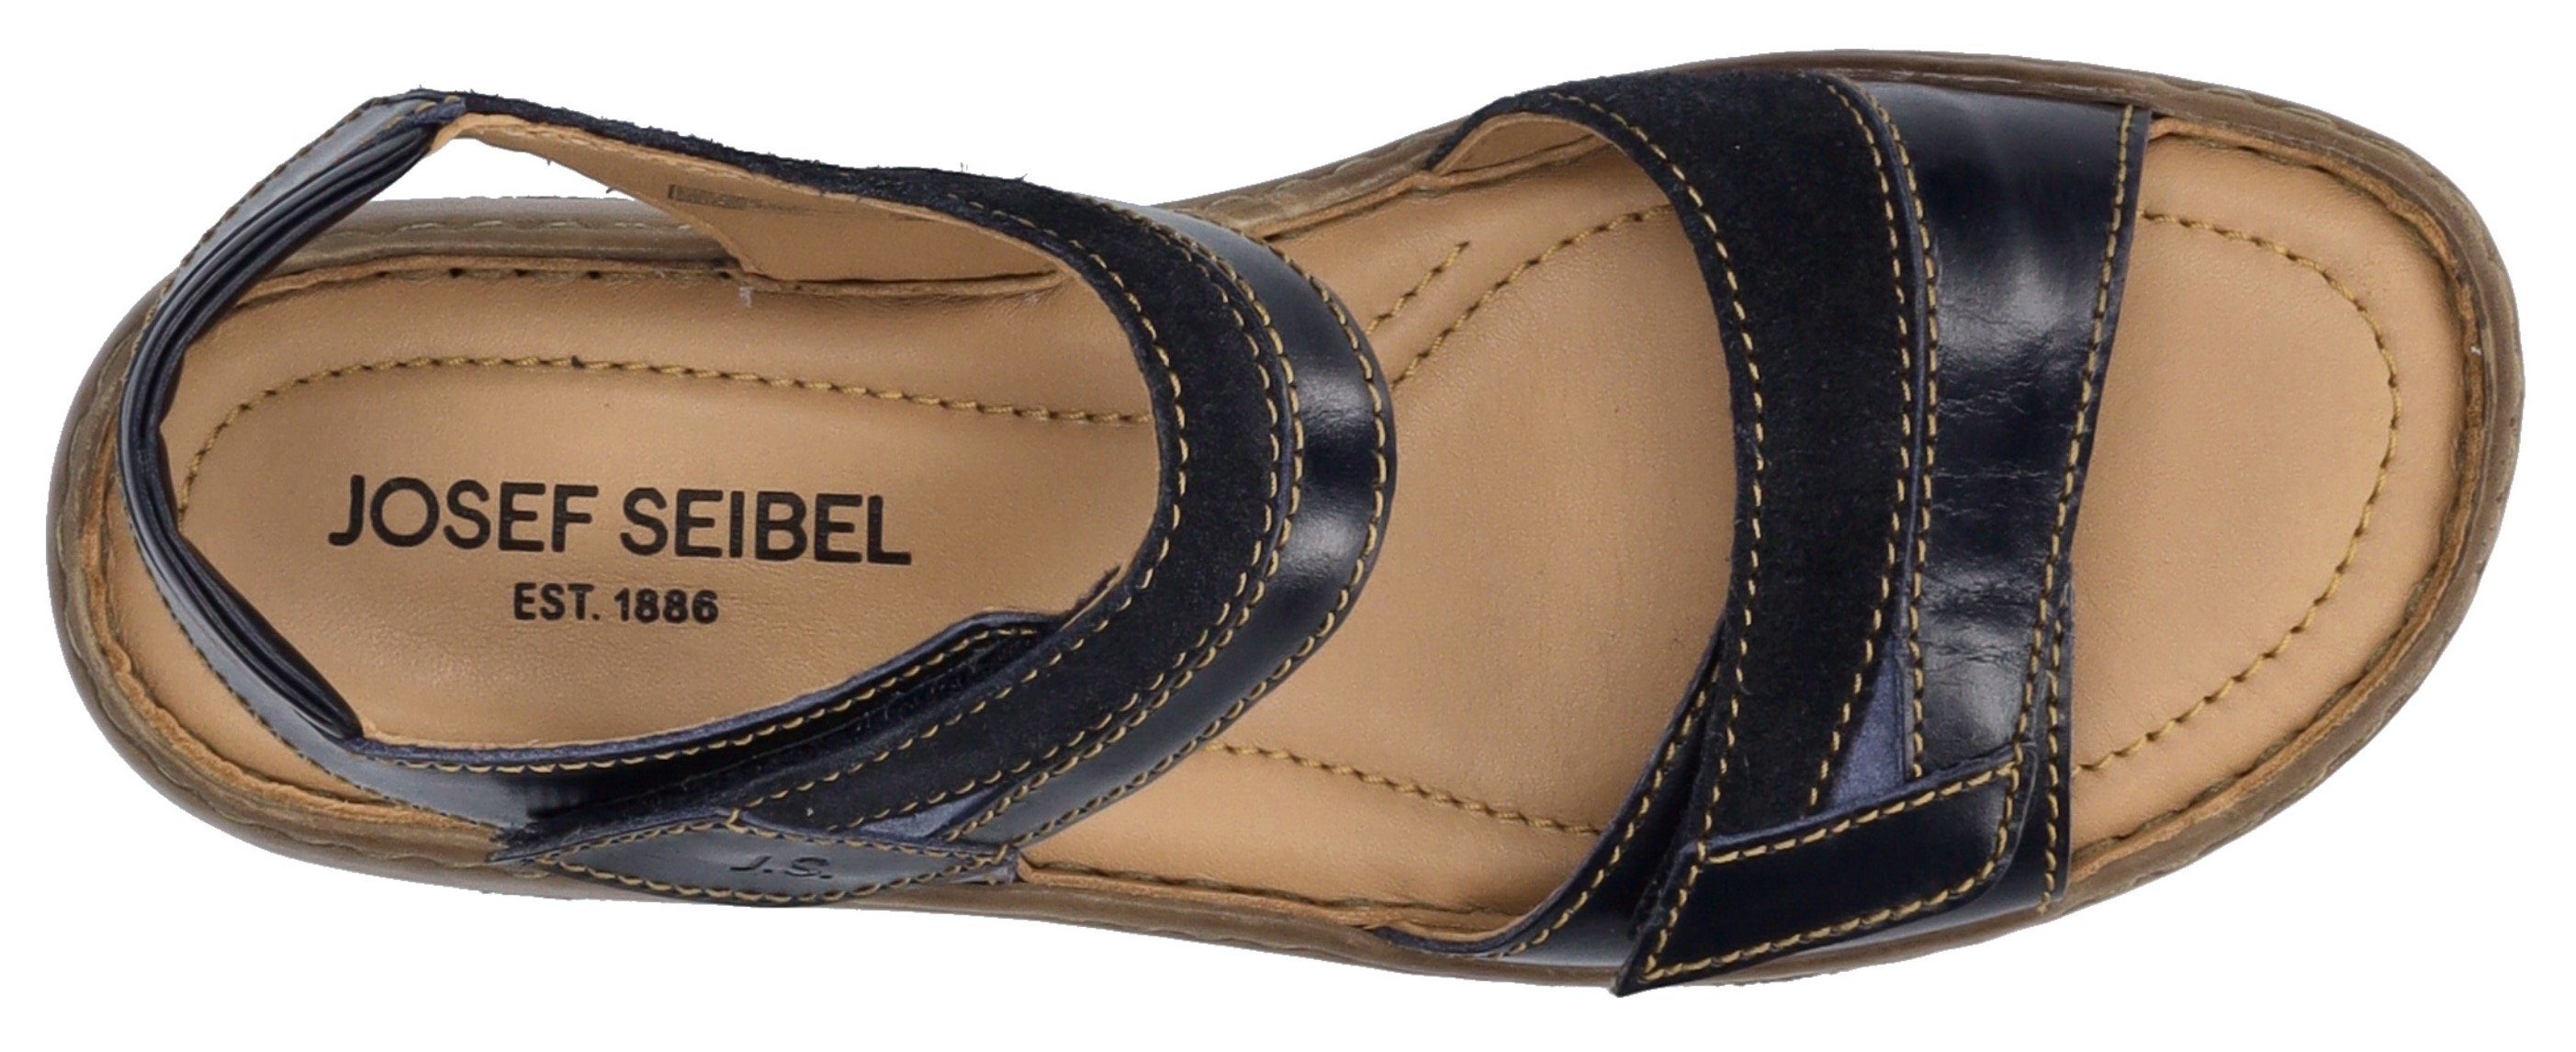 Klettverschluss Sandale Seibel jeansblau 19 praktischem Josef Debra mit